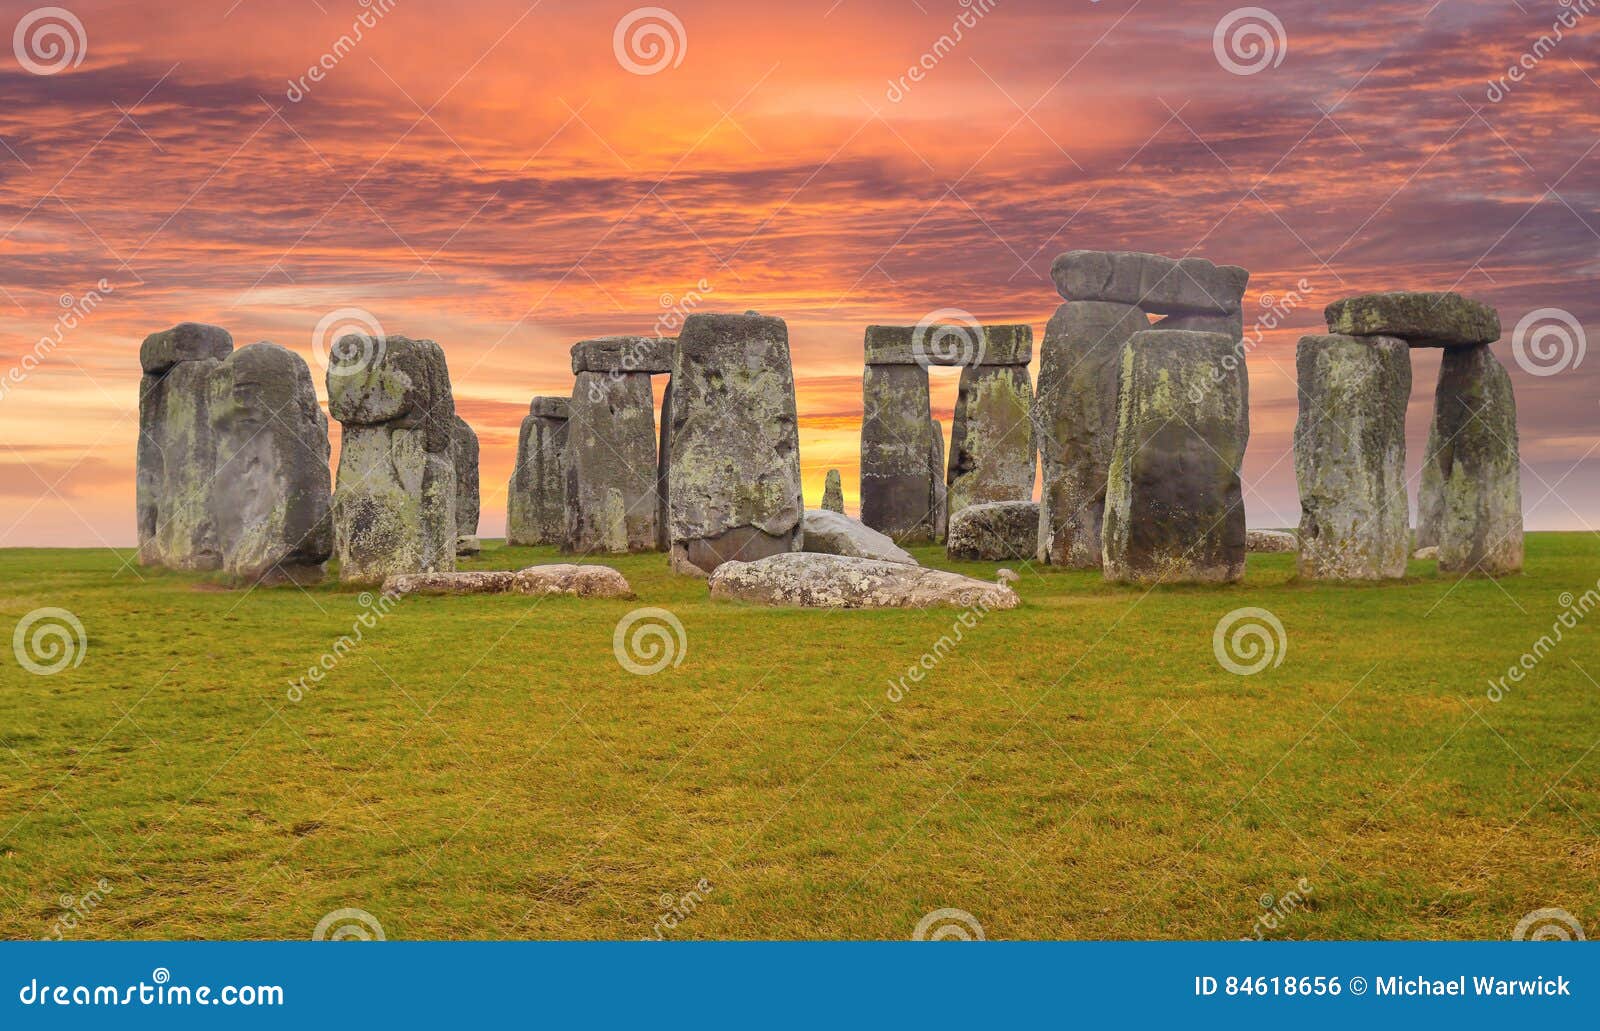 stonehenge england sunset sky